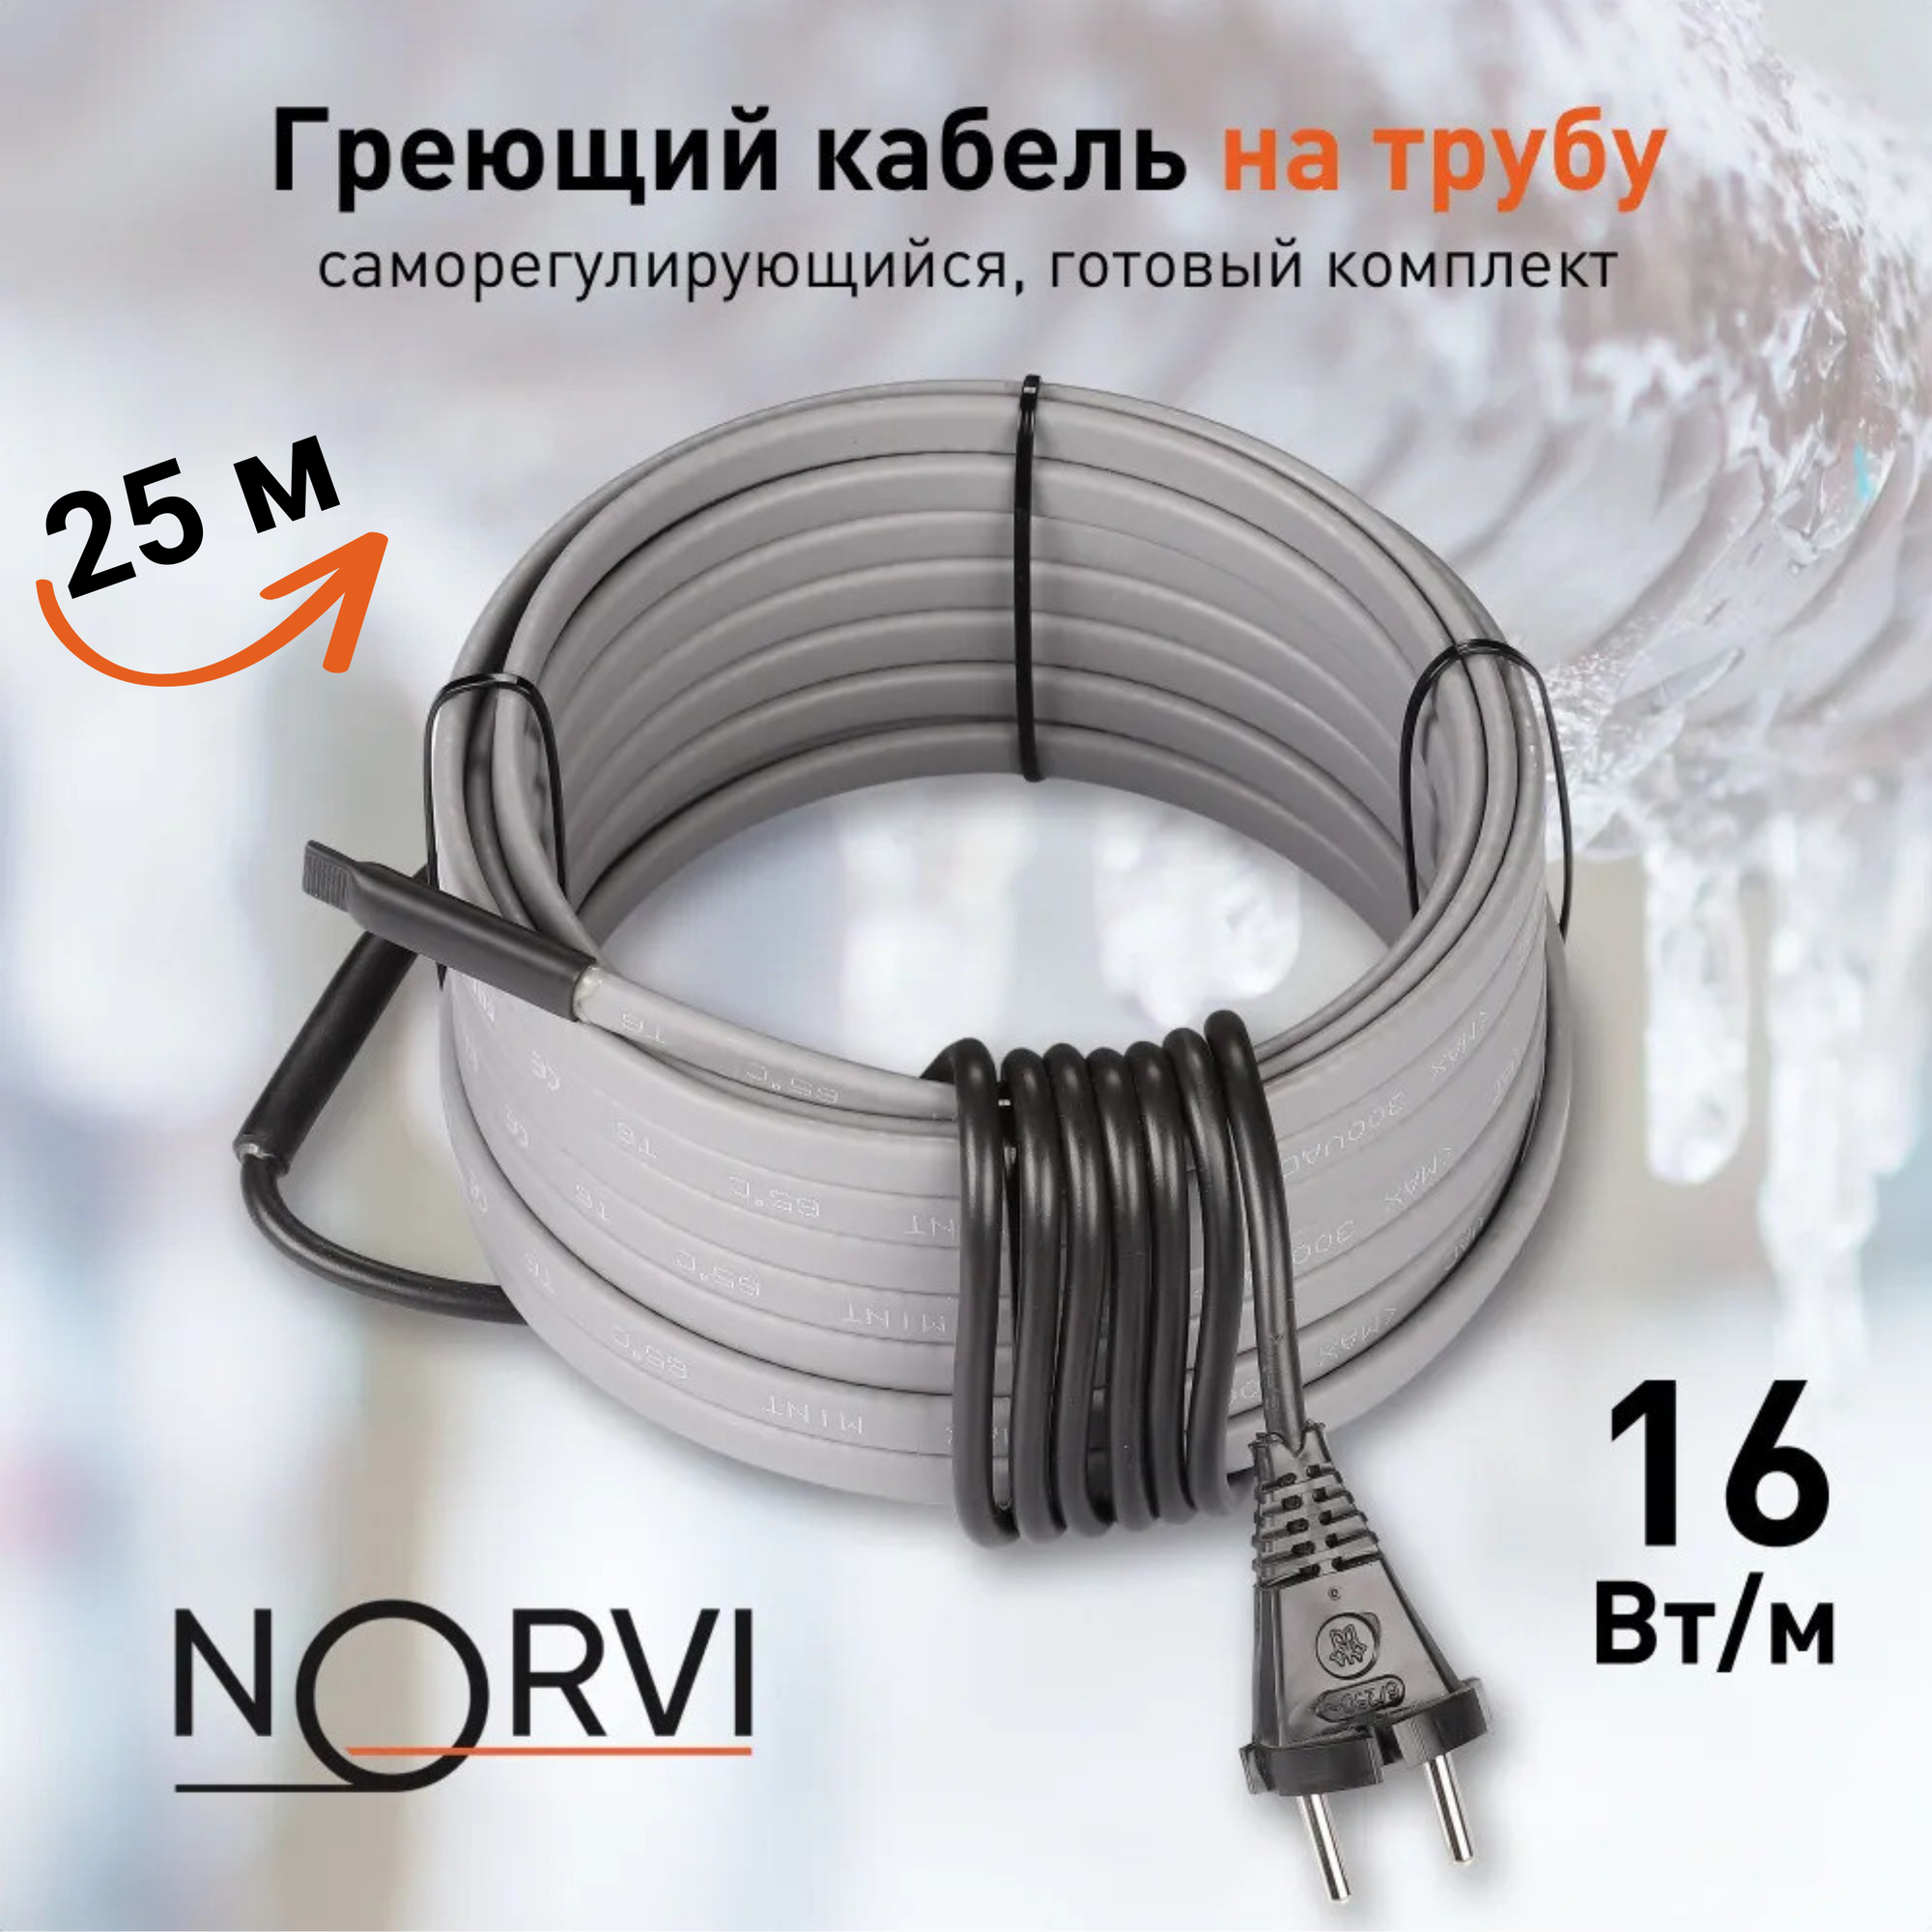 Греющий кабель NORVI ONPIPE, 400 Вт, 25 м, для обогрева труб снаружи